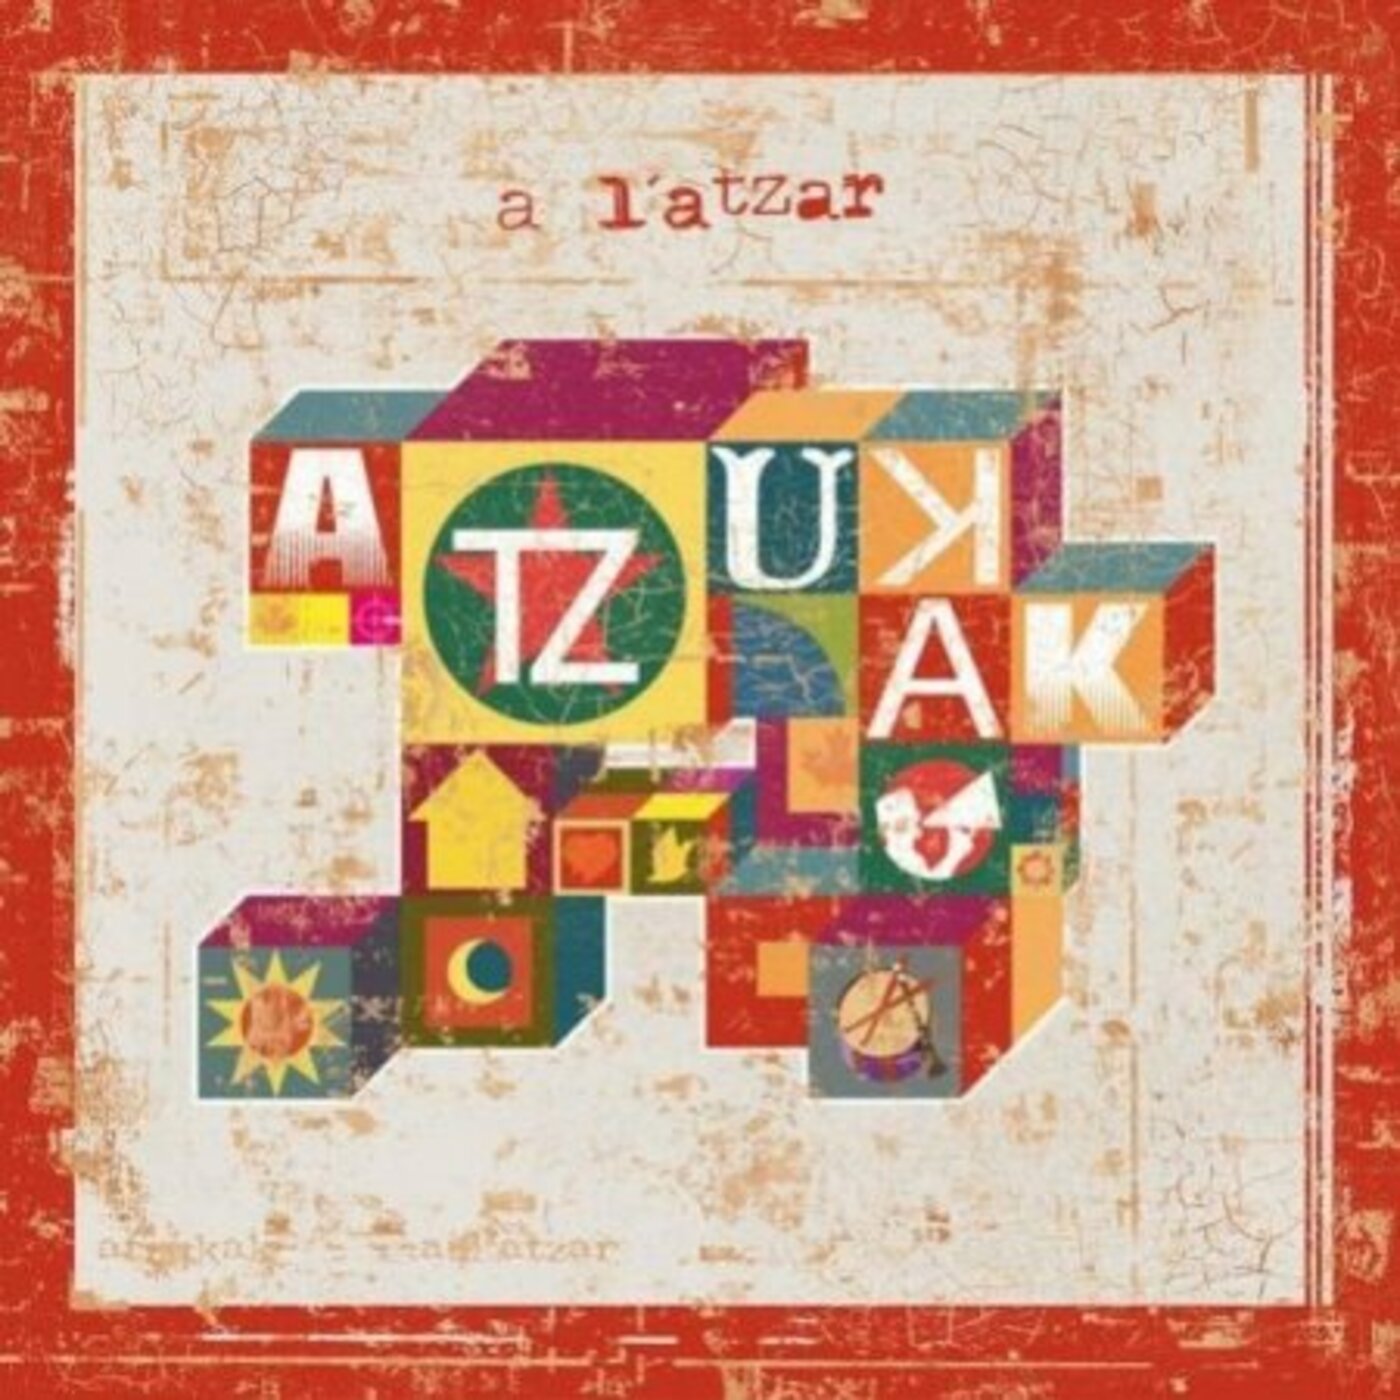 Atzukak - A l'atzar | musica en valencià